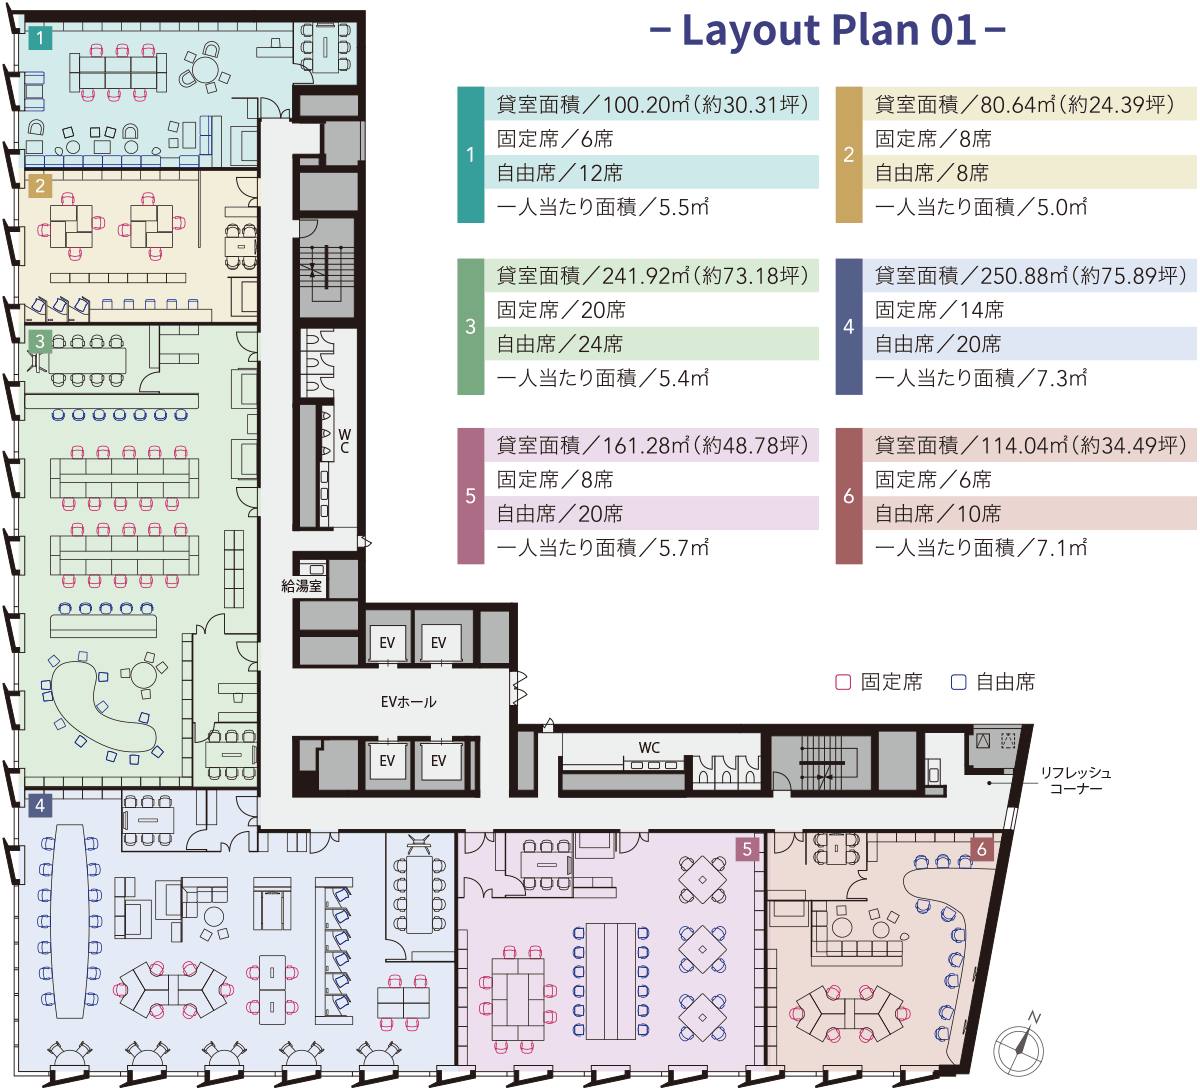 Layout Plan 01